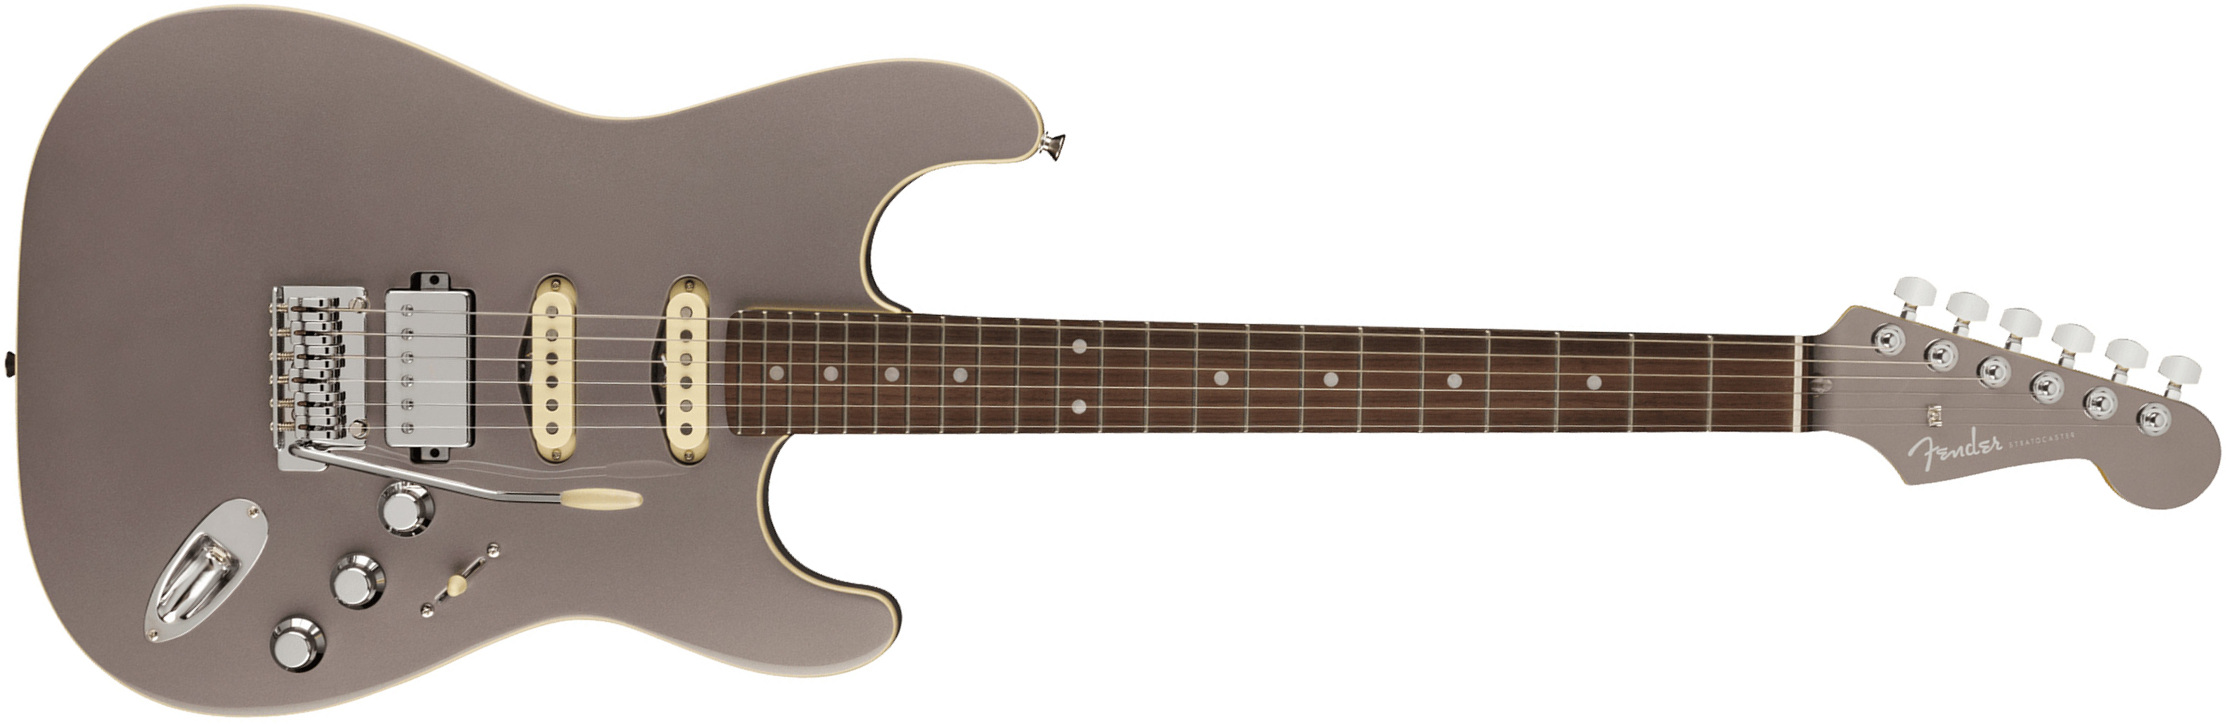 Fender Strat Aerodyne Special Jap Trem Hss Rw - Dolphin Gray Metallic - Elektrische gitaar in Str-vorm - Main picture